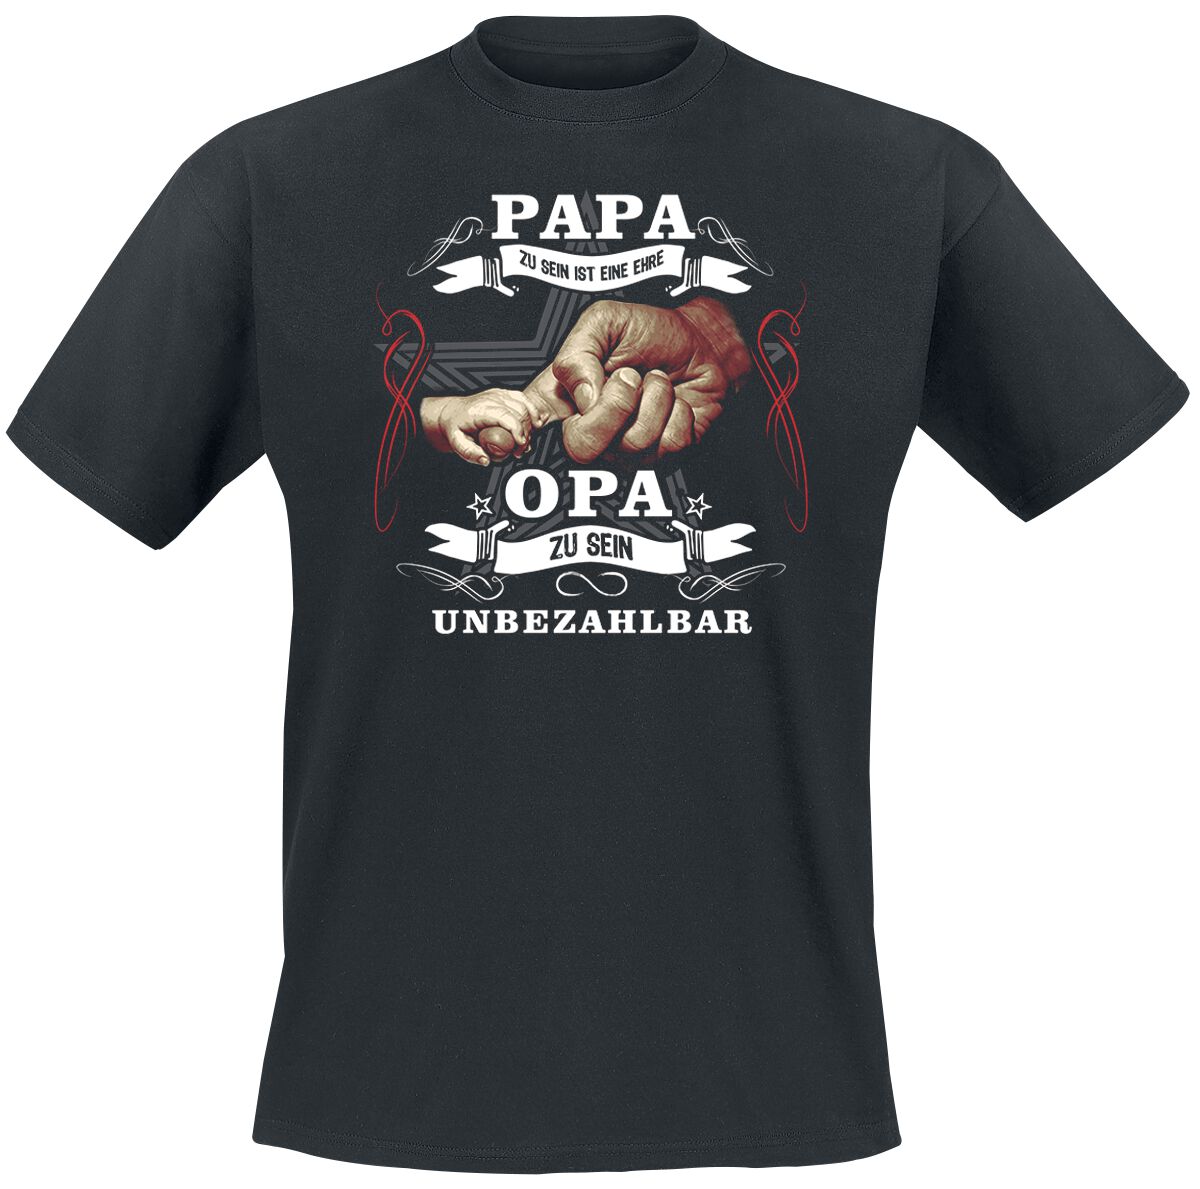 Familie & Freunde T-Shirt - Papa zu sein ist eine Ehre - XXL bis 5XL - für Männer - Größe 4XL - schwarz